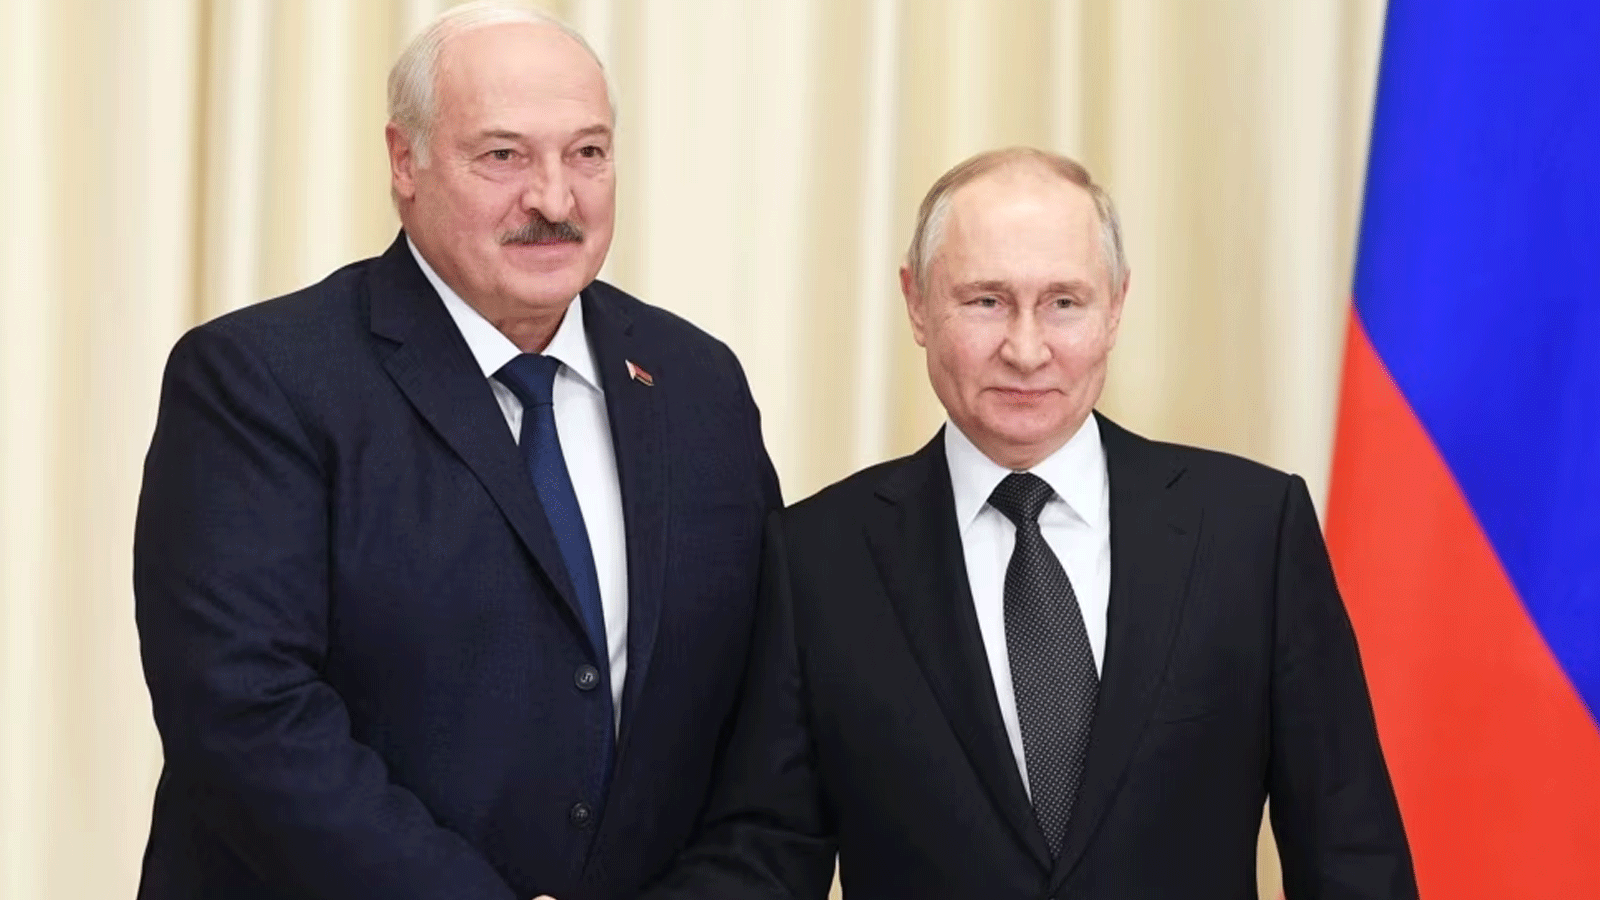 الرئيس الروسي فلاديمير بوتين والرئيس البيلاروسي ألكسندر لوكاشينكو